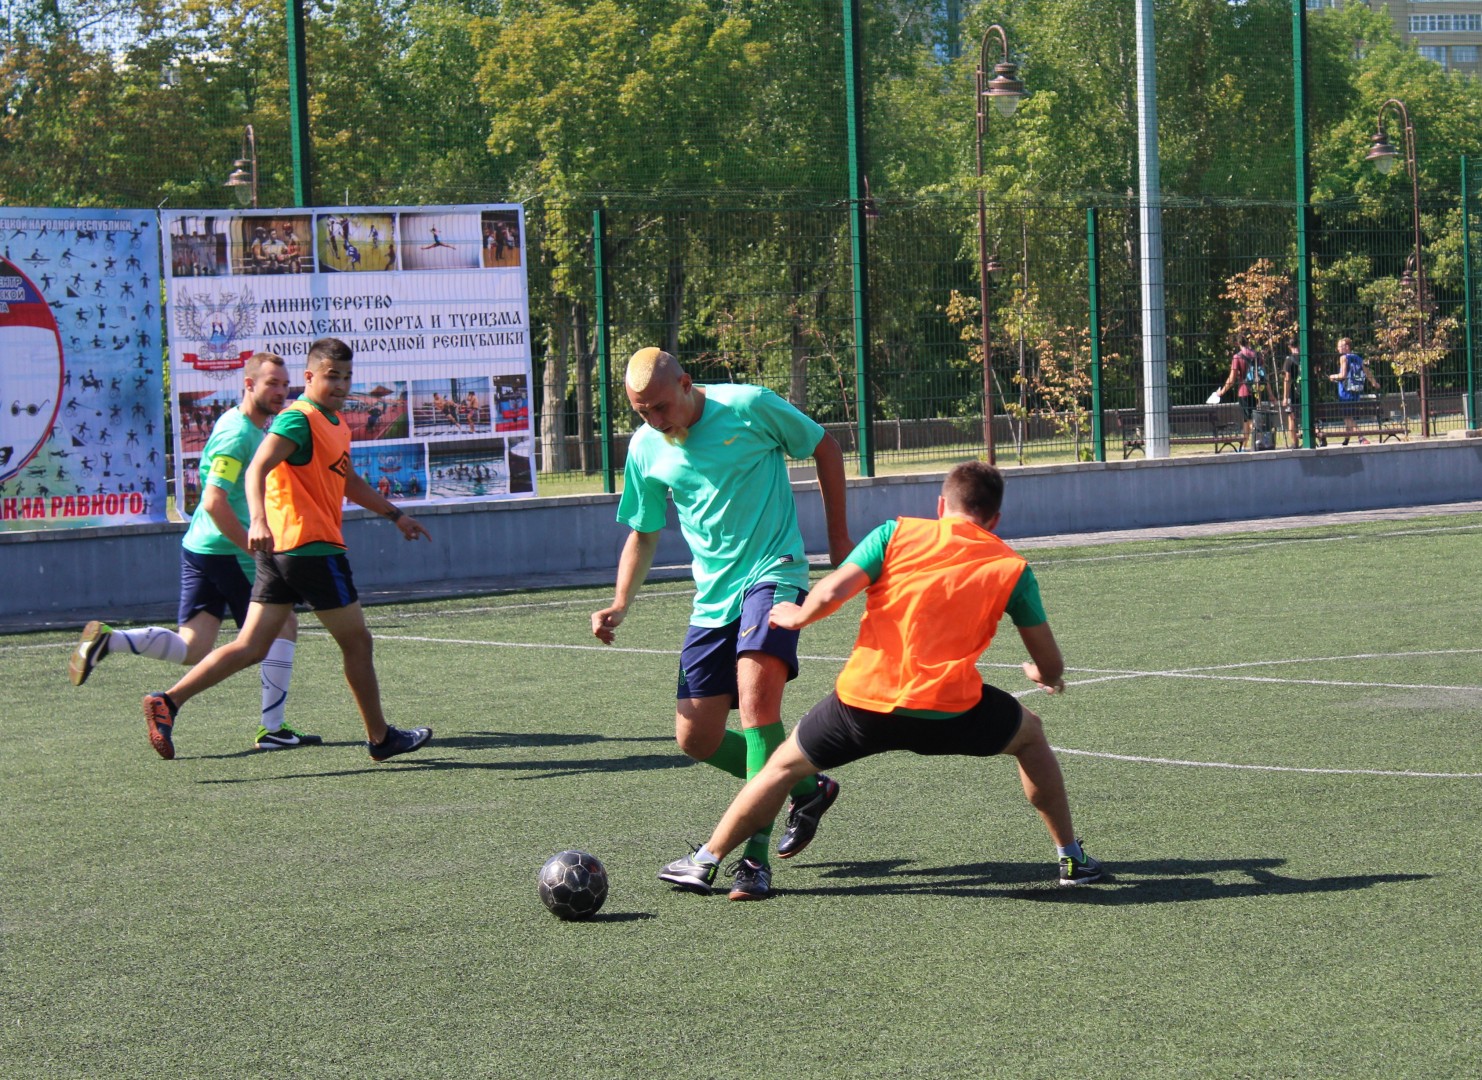 Команда из Орловской области РФ завоевала призовое место на турнире по мини-футболу в ДНР